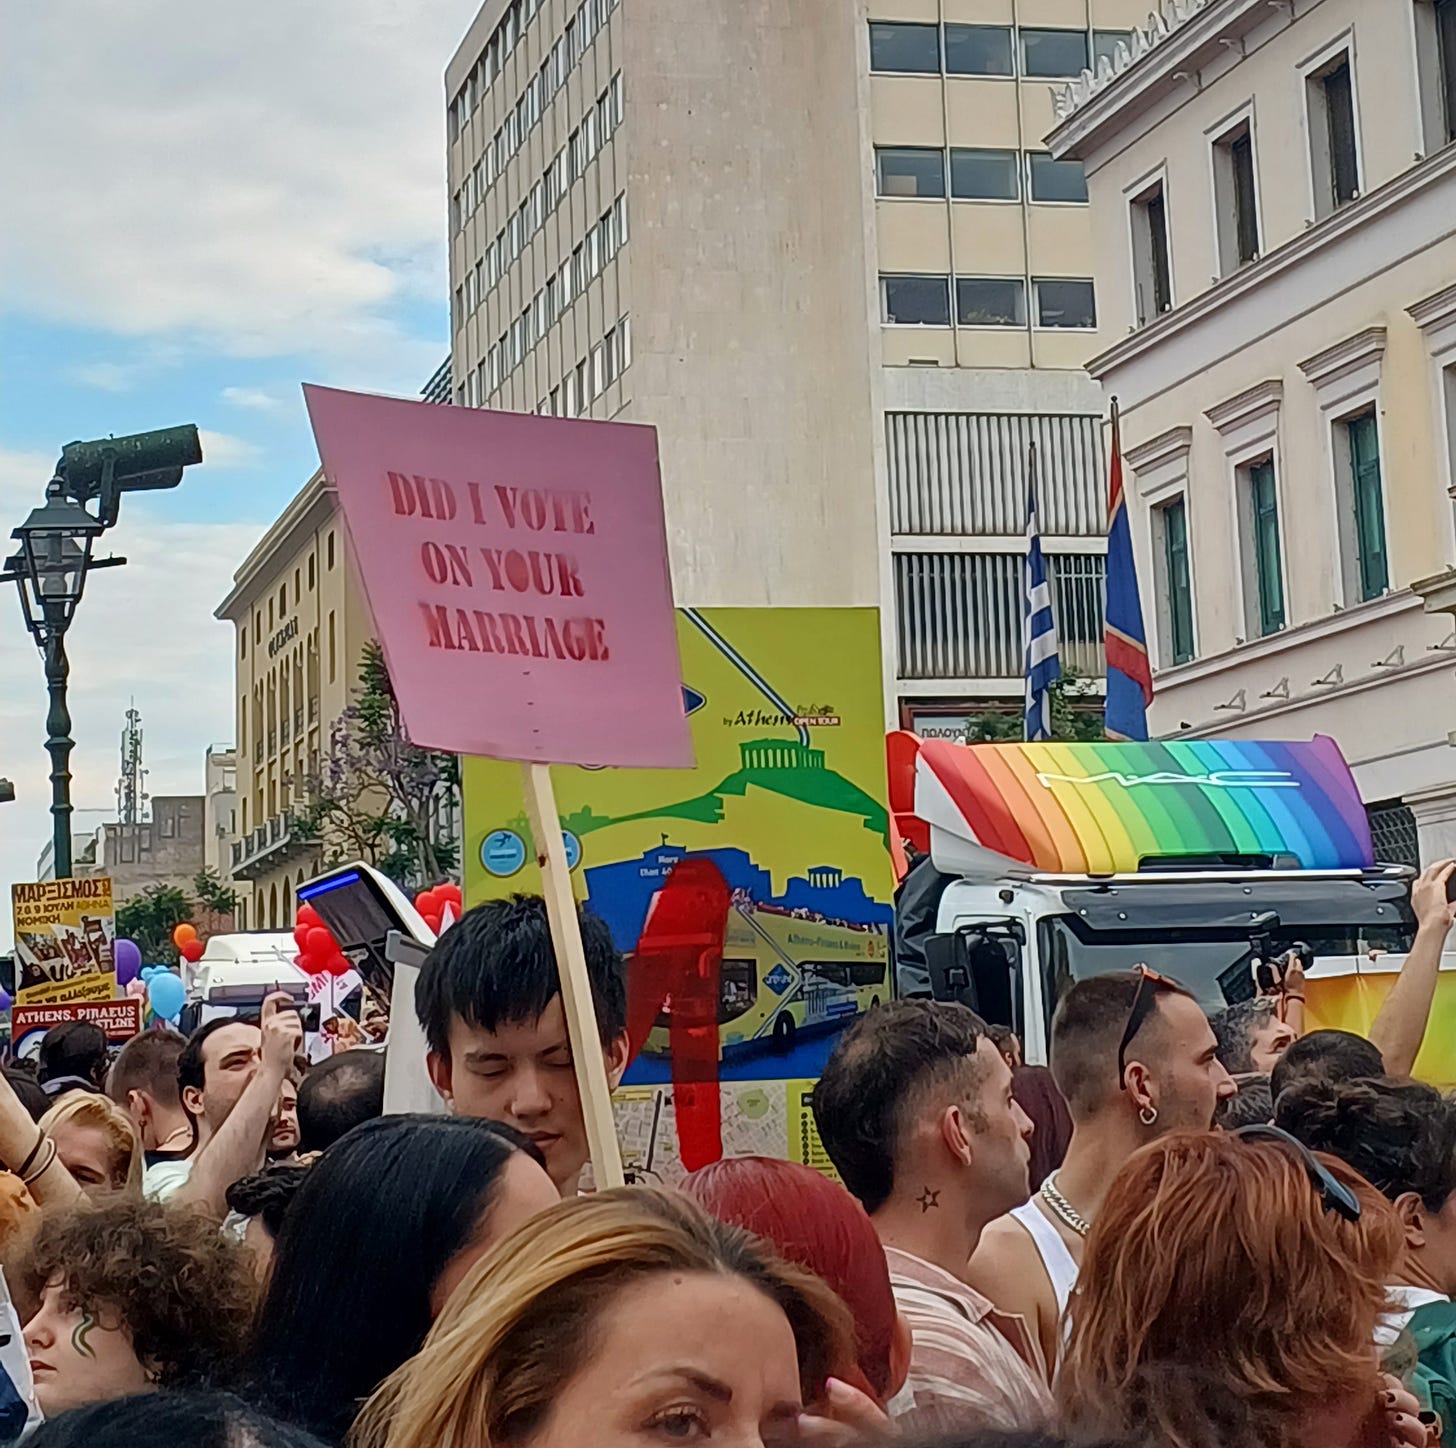 Uno scorcio della folla al Pride di Atene: una persona regge un cartello rosa che dice "Did I vote on your marriage?"